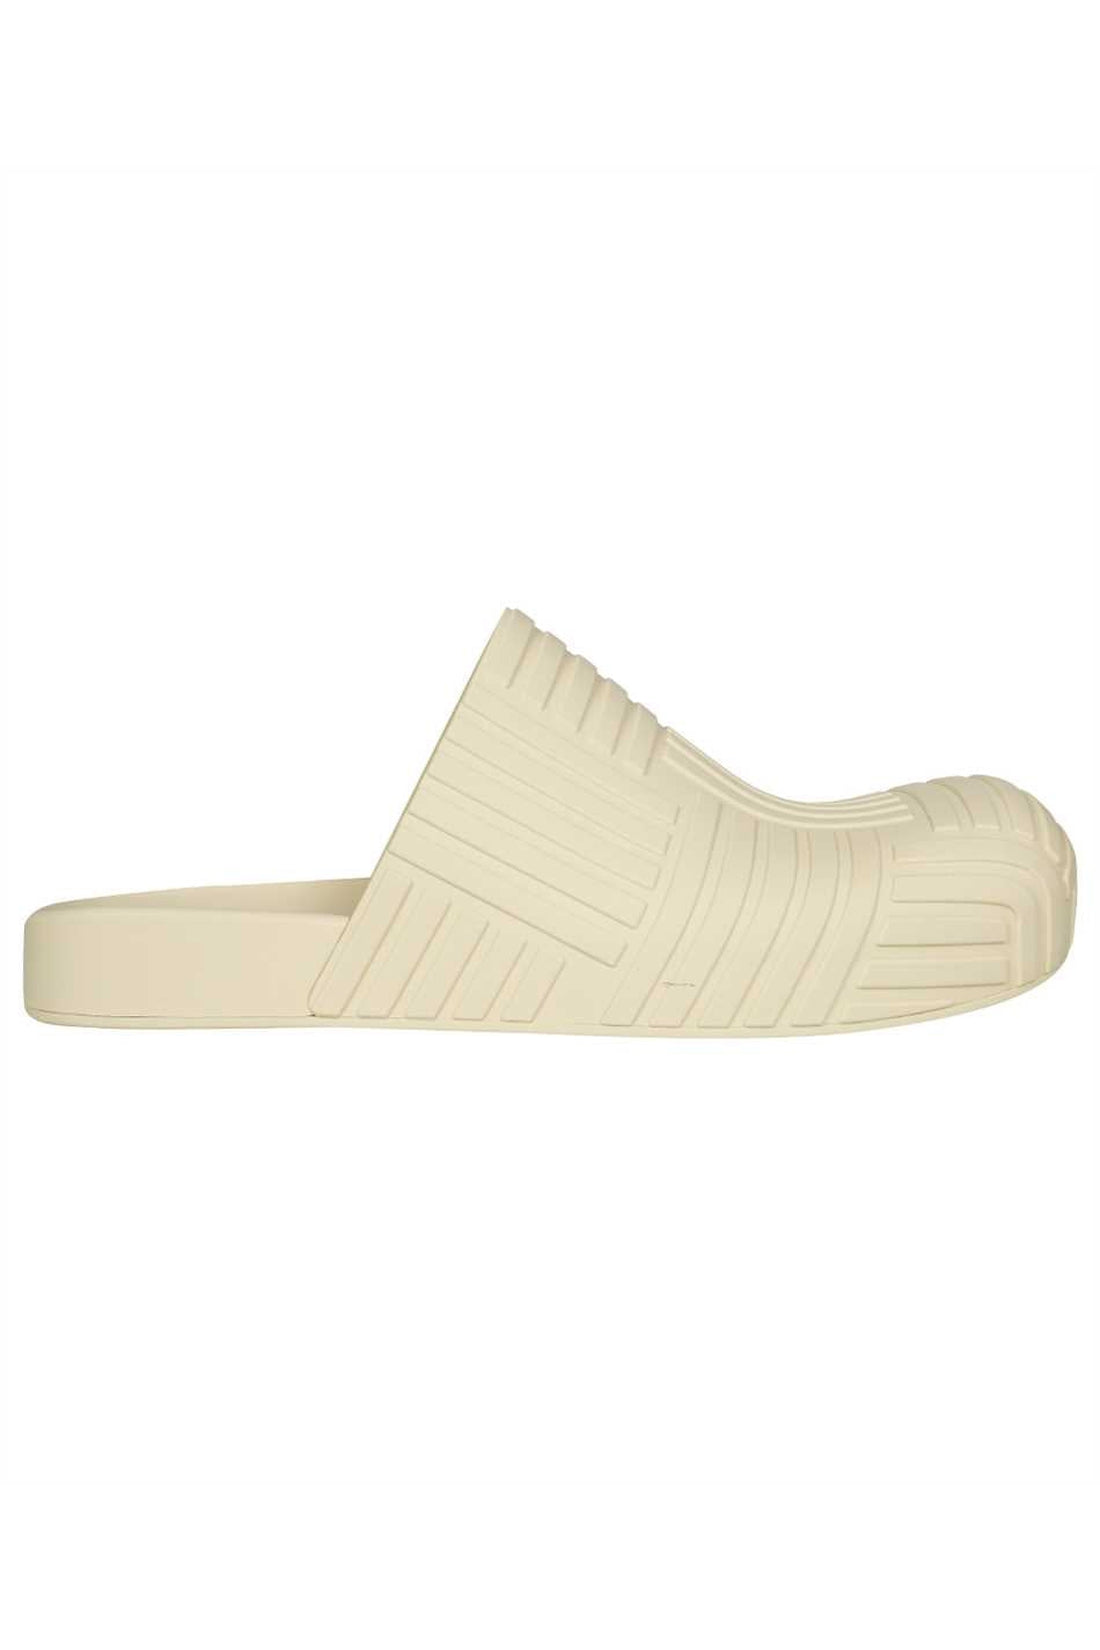 Bottega Veneta-OUTLET-SALE-Slider rubber slippers-ARCHIVIST